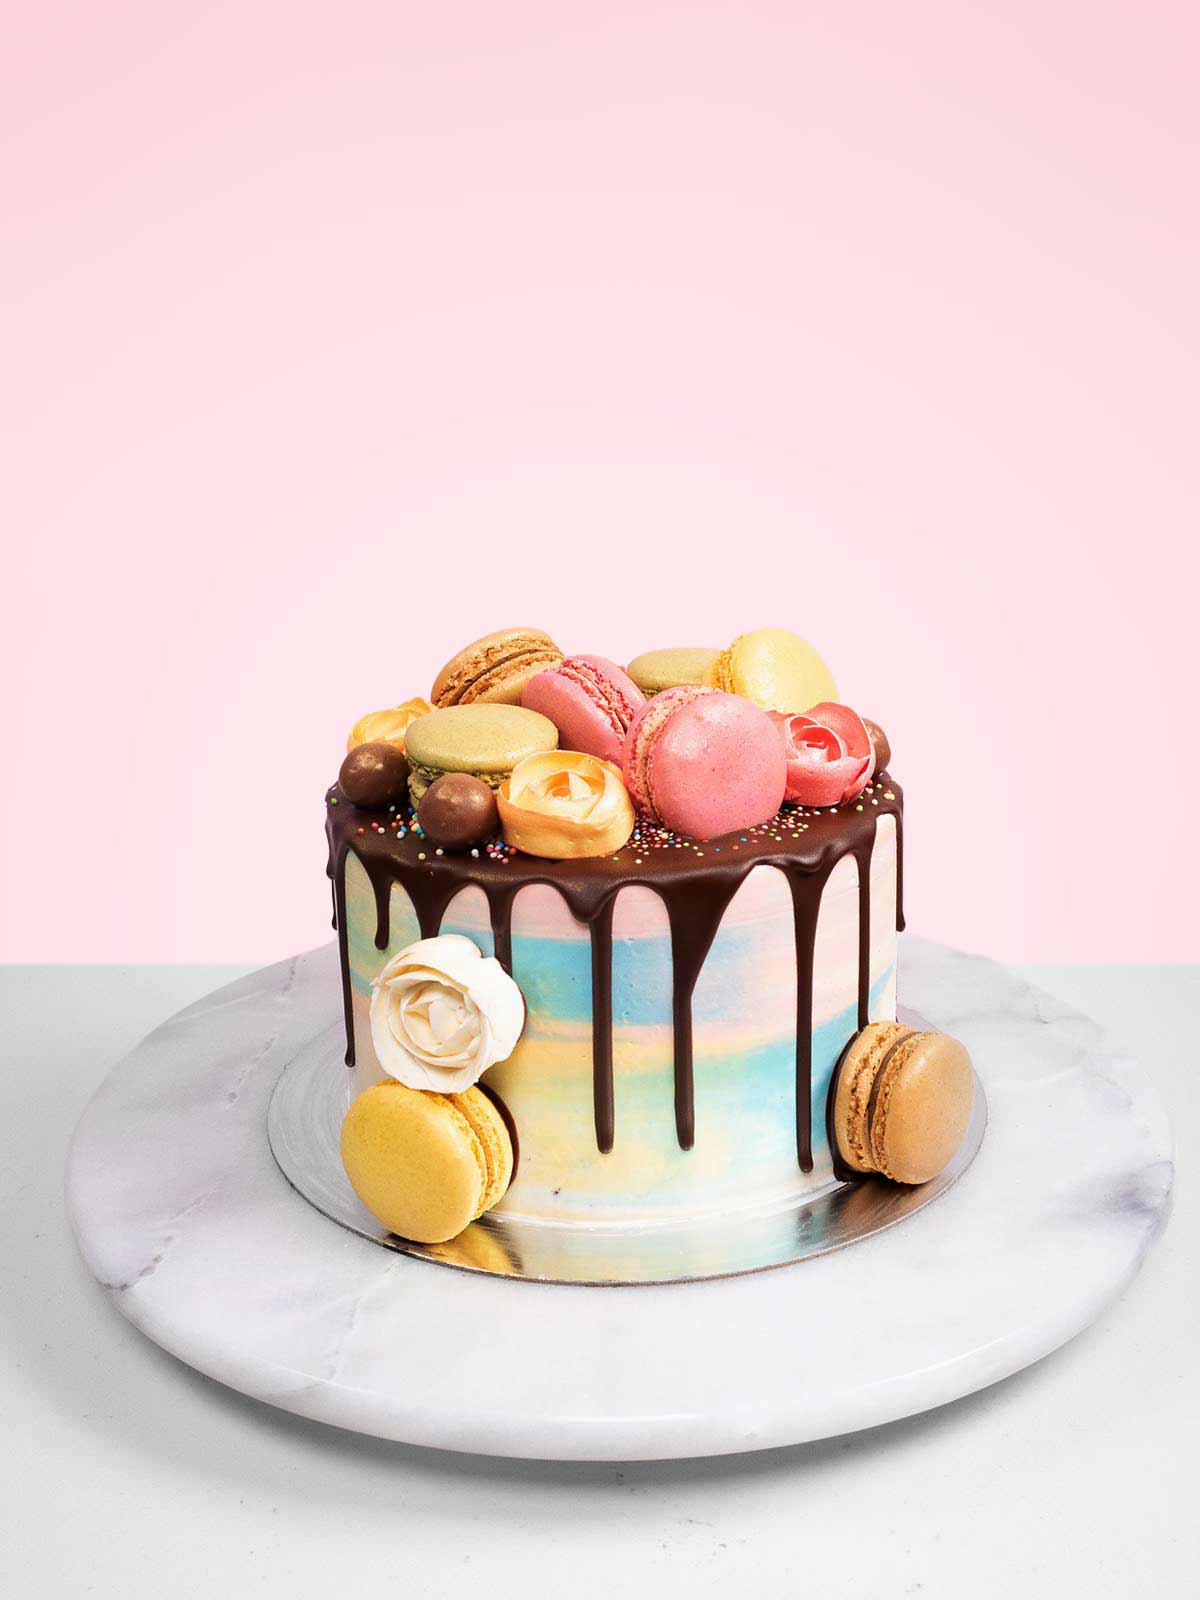 Monet-Antoinette Cake